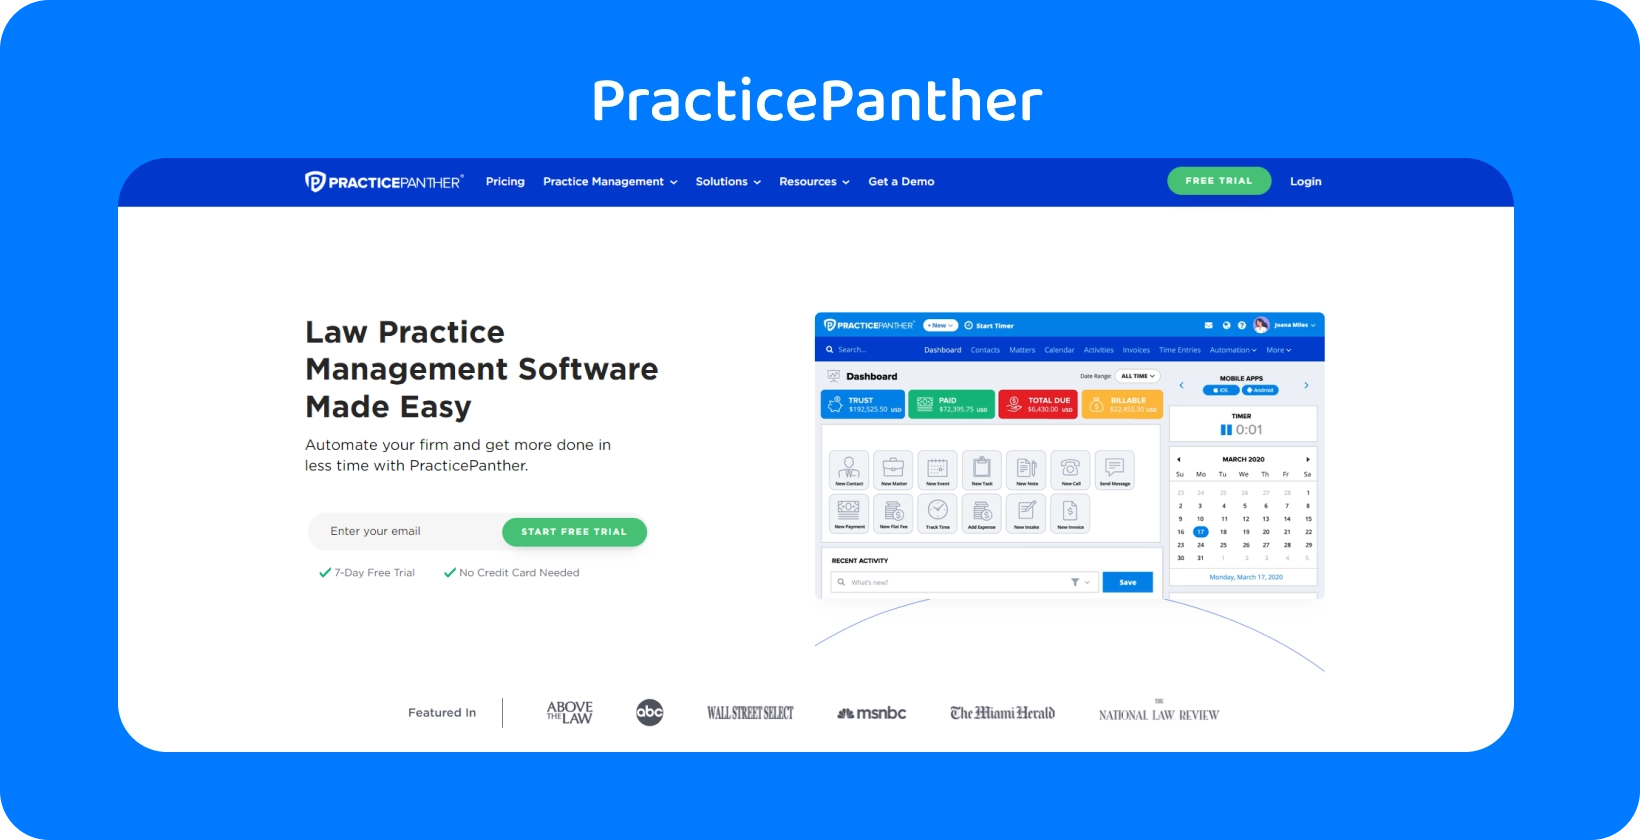 PracticePanther informačný panel, ktorý predstavuje nástroje pre riadenie právnej praxe.